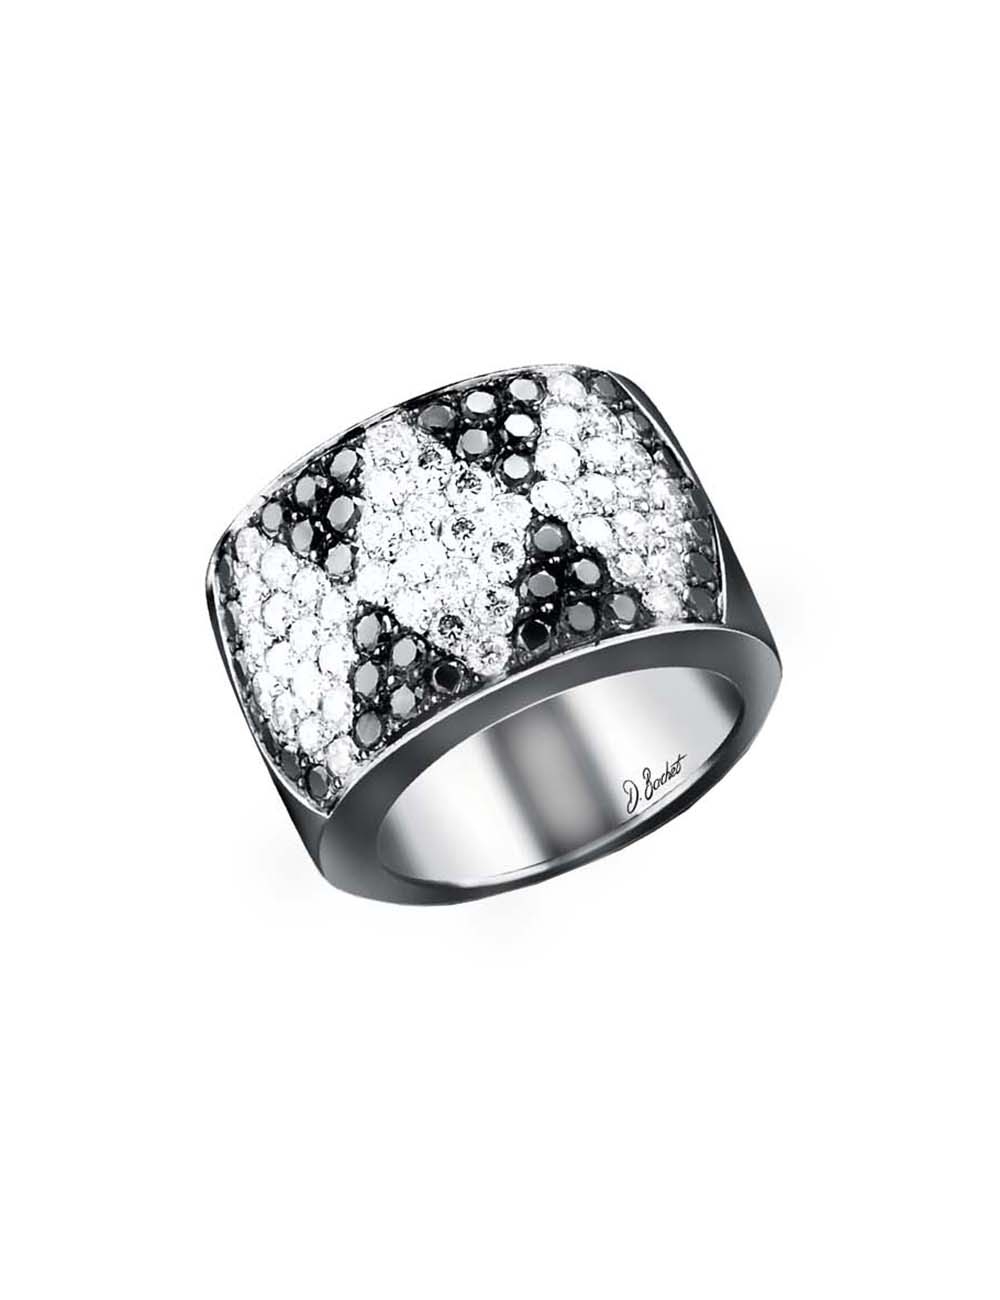 Women's luxury ring in platinum, white diamonds and black diamonds